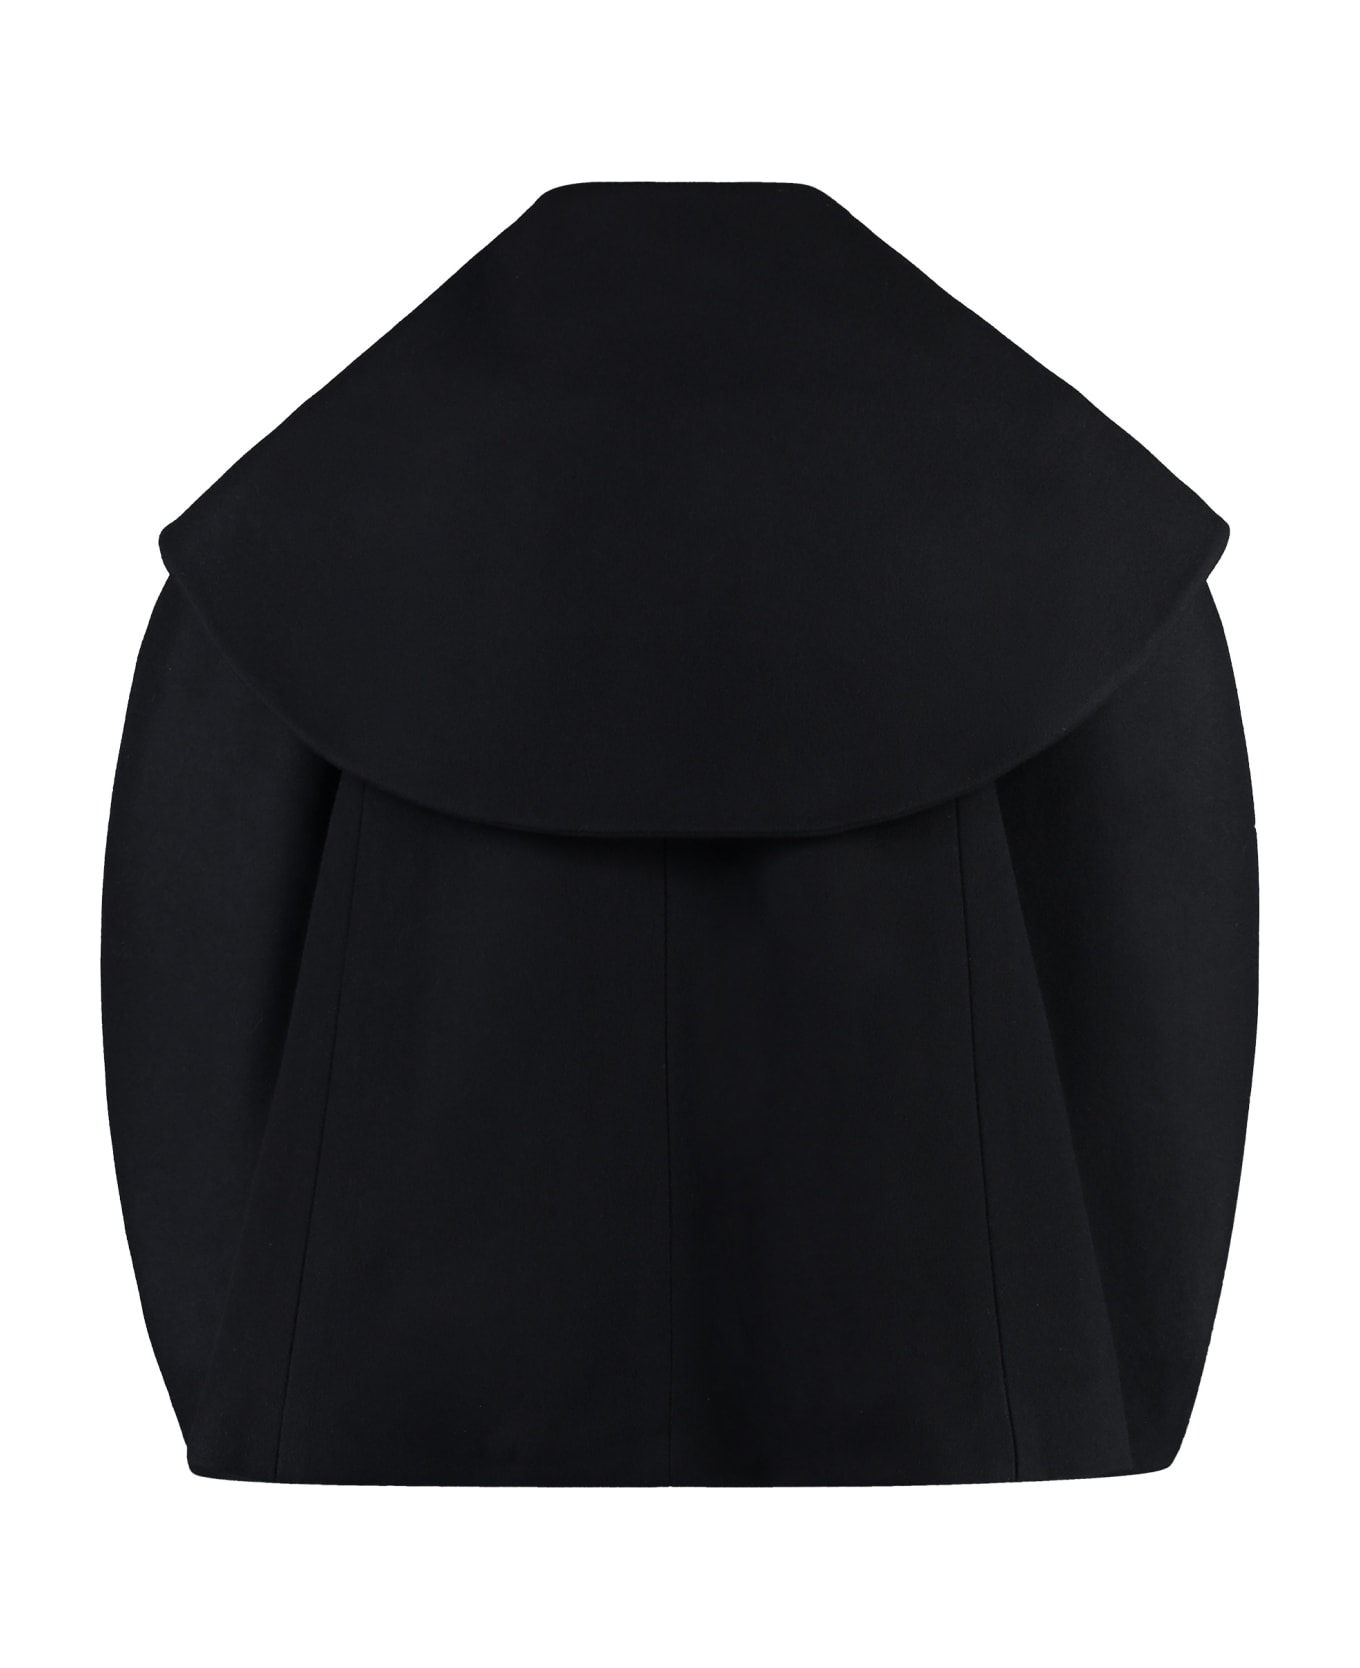 Nina Ricci Wool Blend Jacket - black